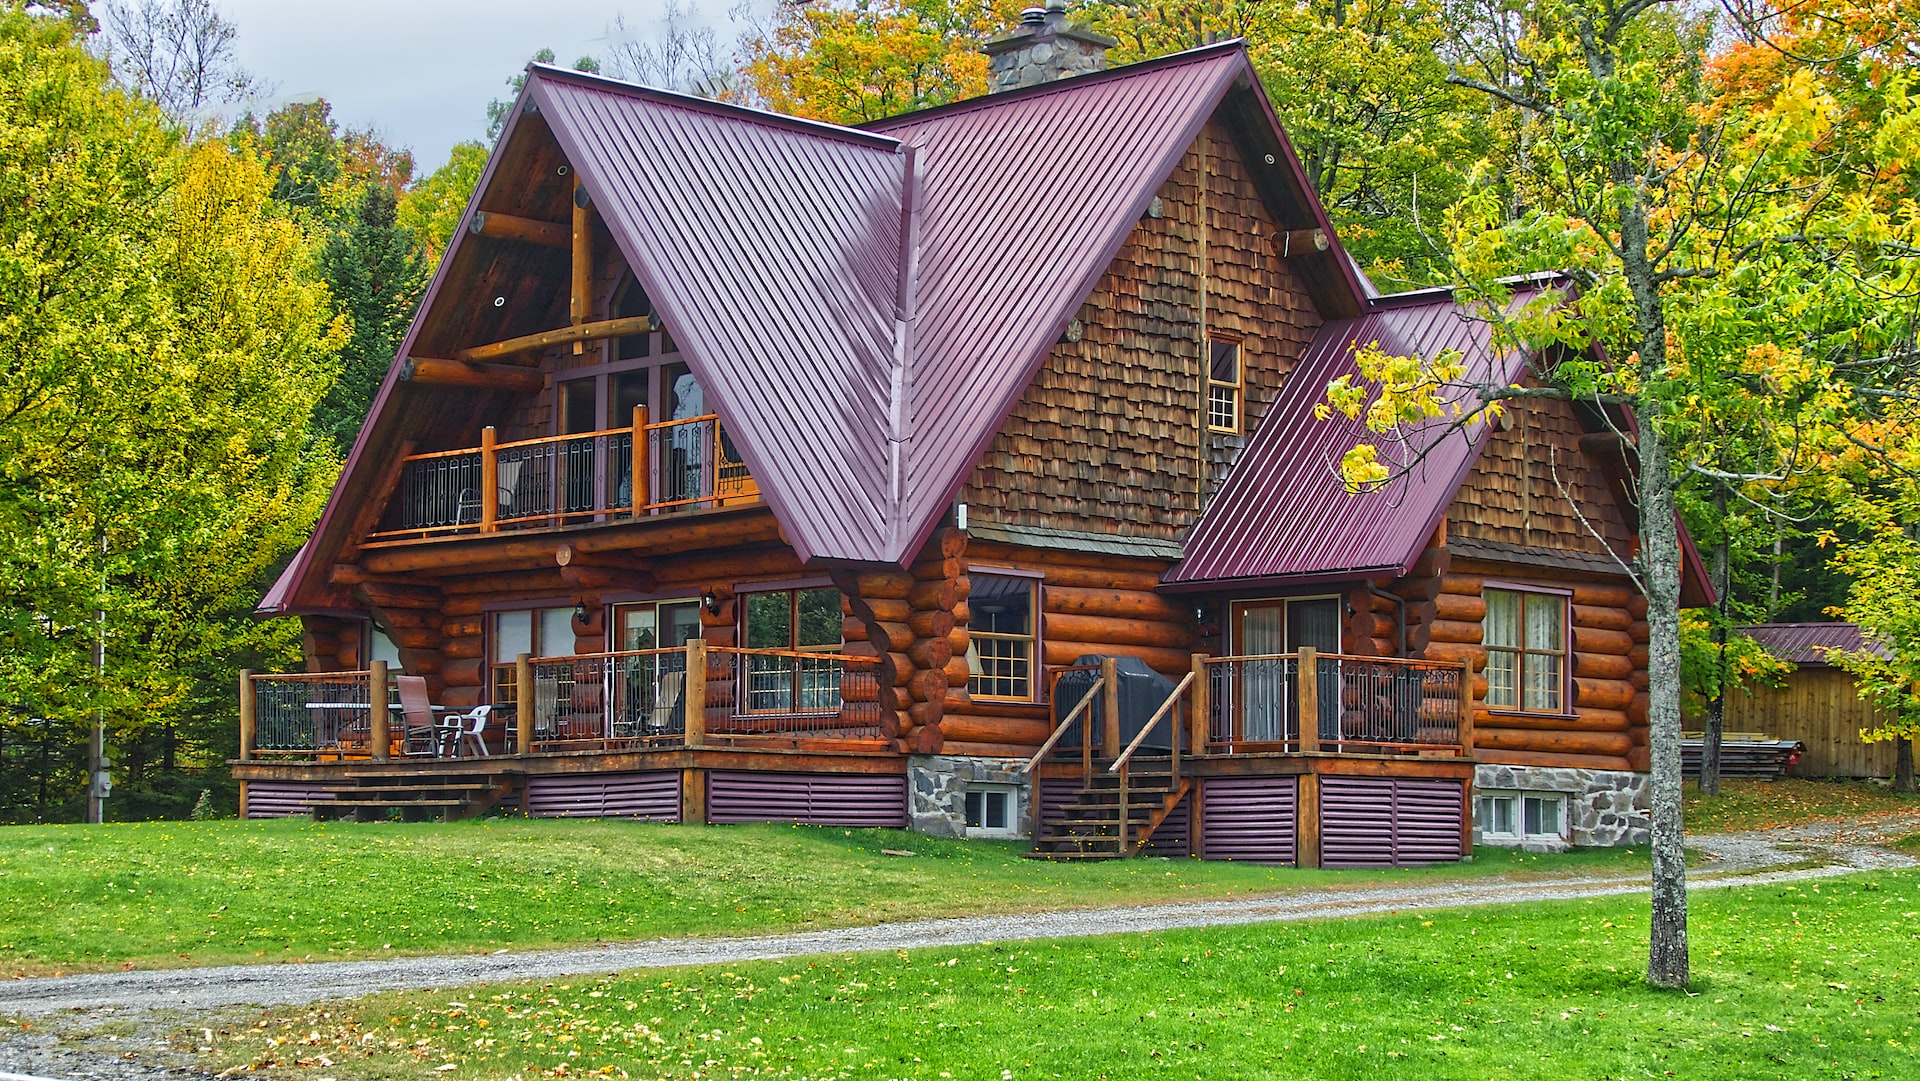 Holzhaus mit Spitzdach im Grünen